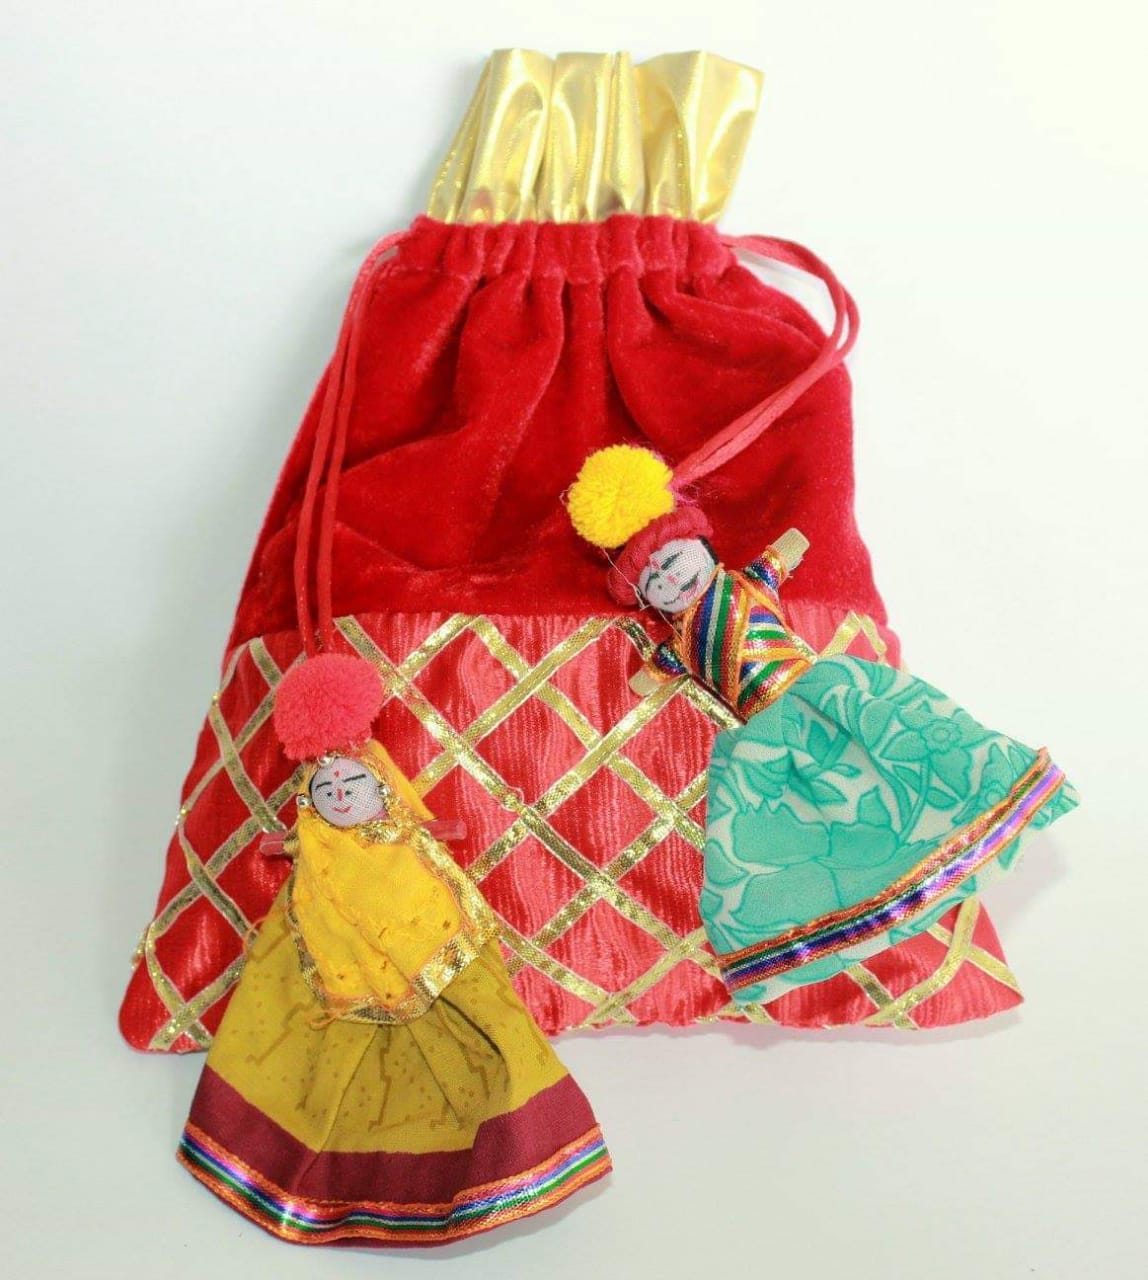 LAMANSH ® Women's Potli Bag Pack of 10 LAMANSH® Pack of 10 (7*9 inch) Women's Potli Bag With Attached Raja Rani Puppet For gifting